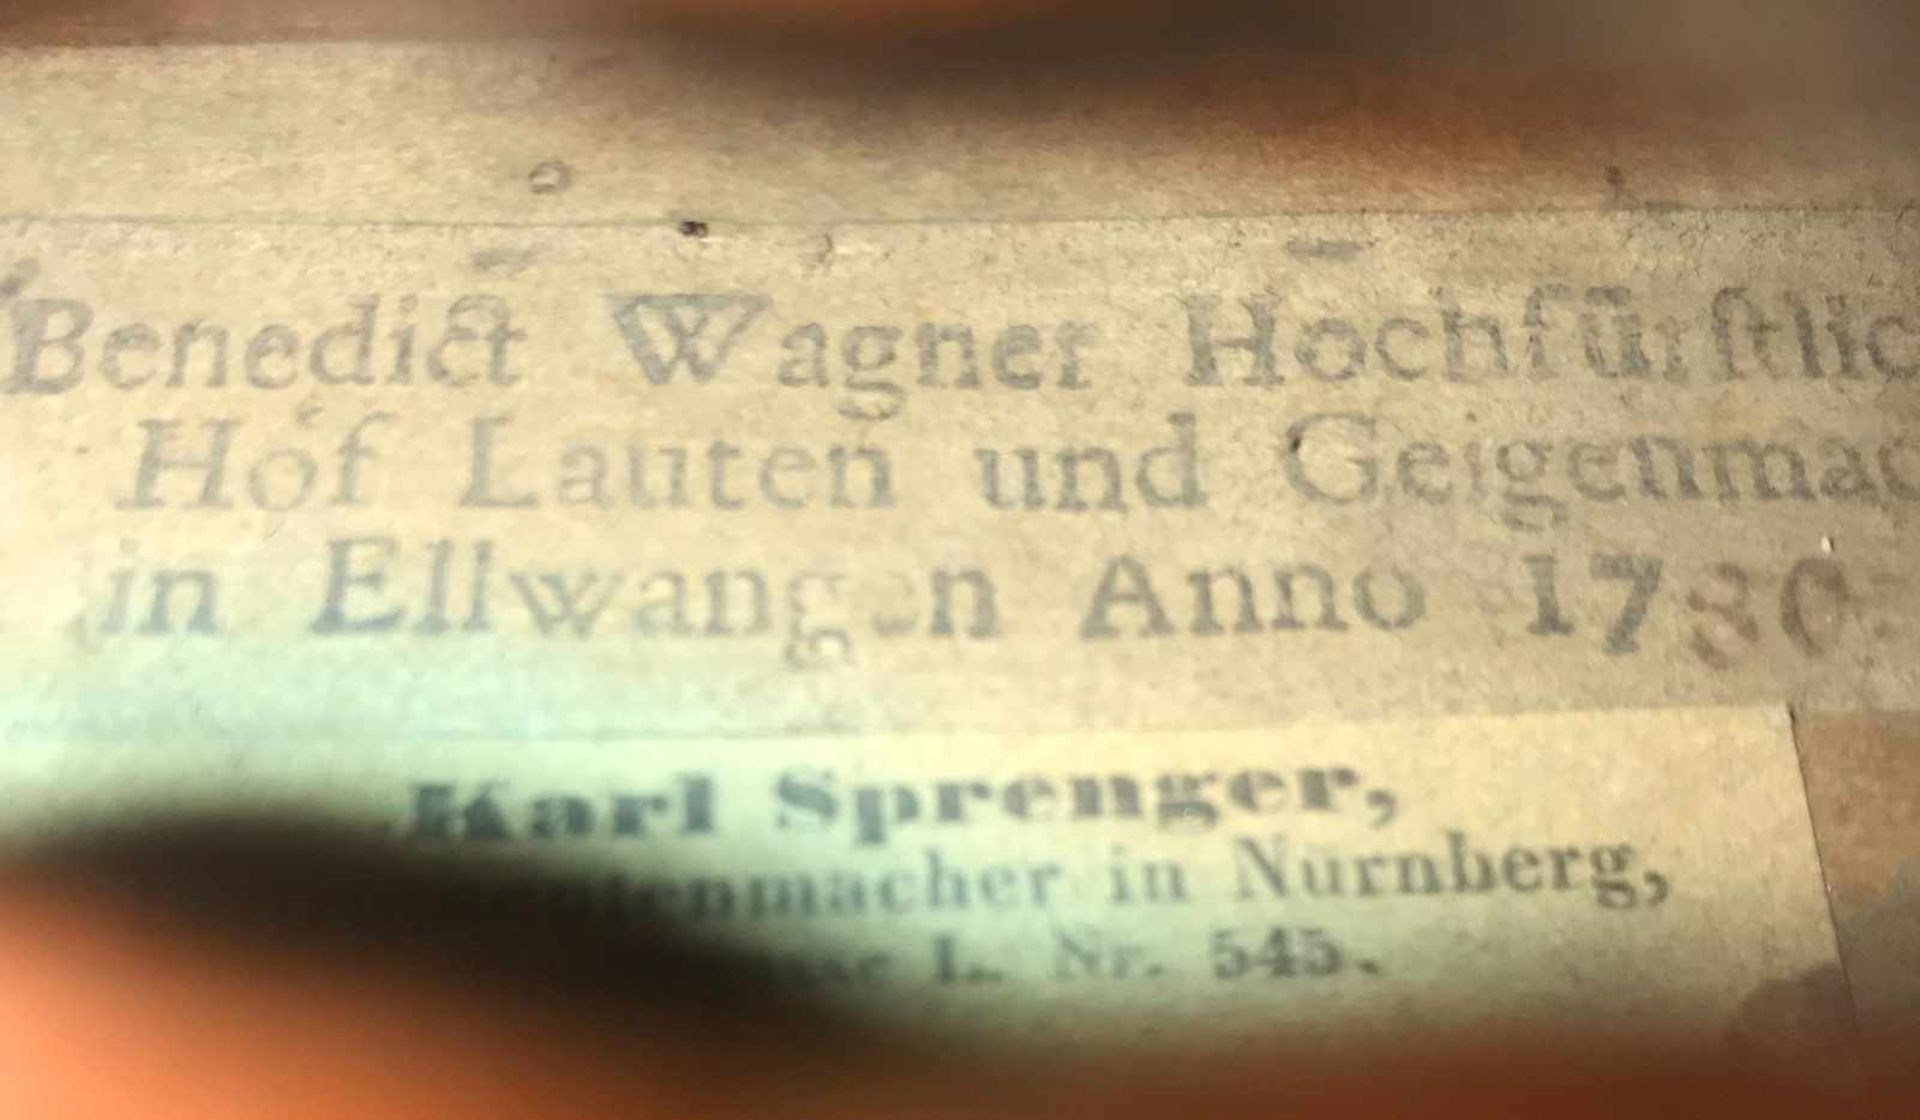 Benedikt Wagner (1720- 1796), Wellengeige, Instrument 4/4 Violine, Korpuslänge 33,3 cm. Boden aus - Image 6 of 10